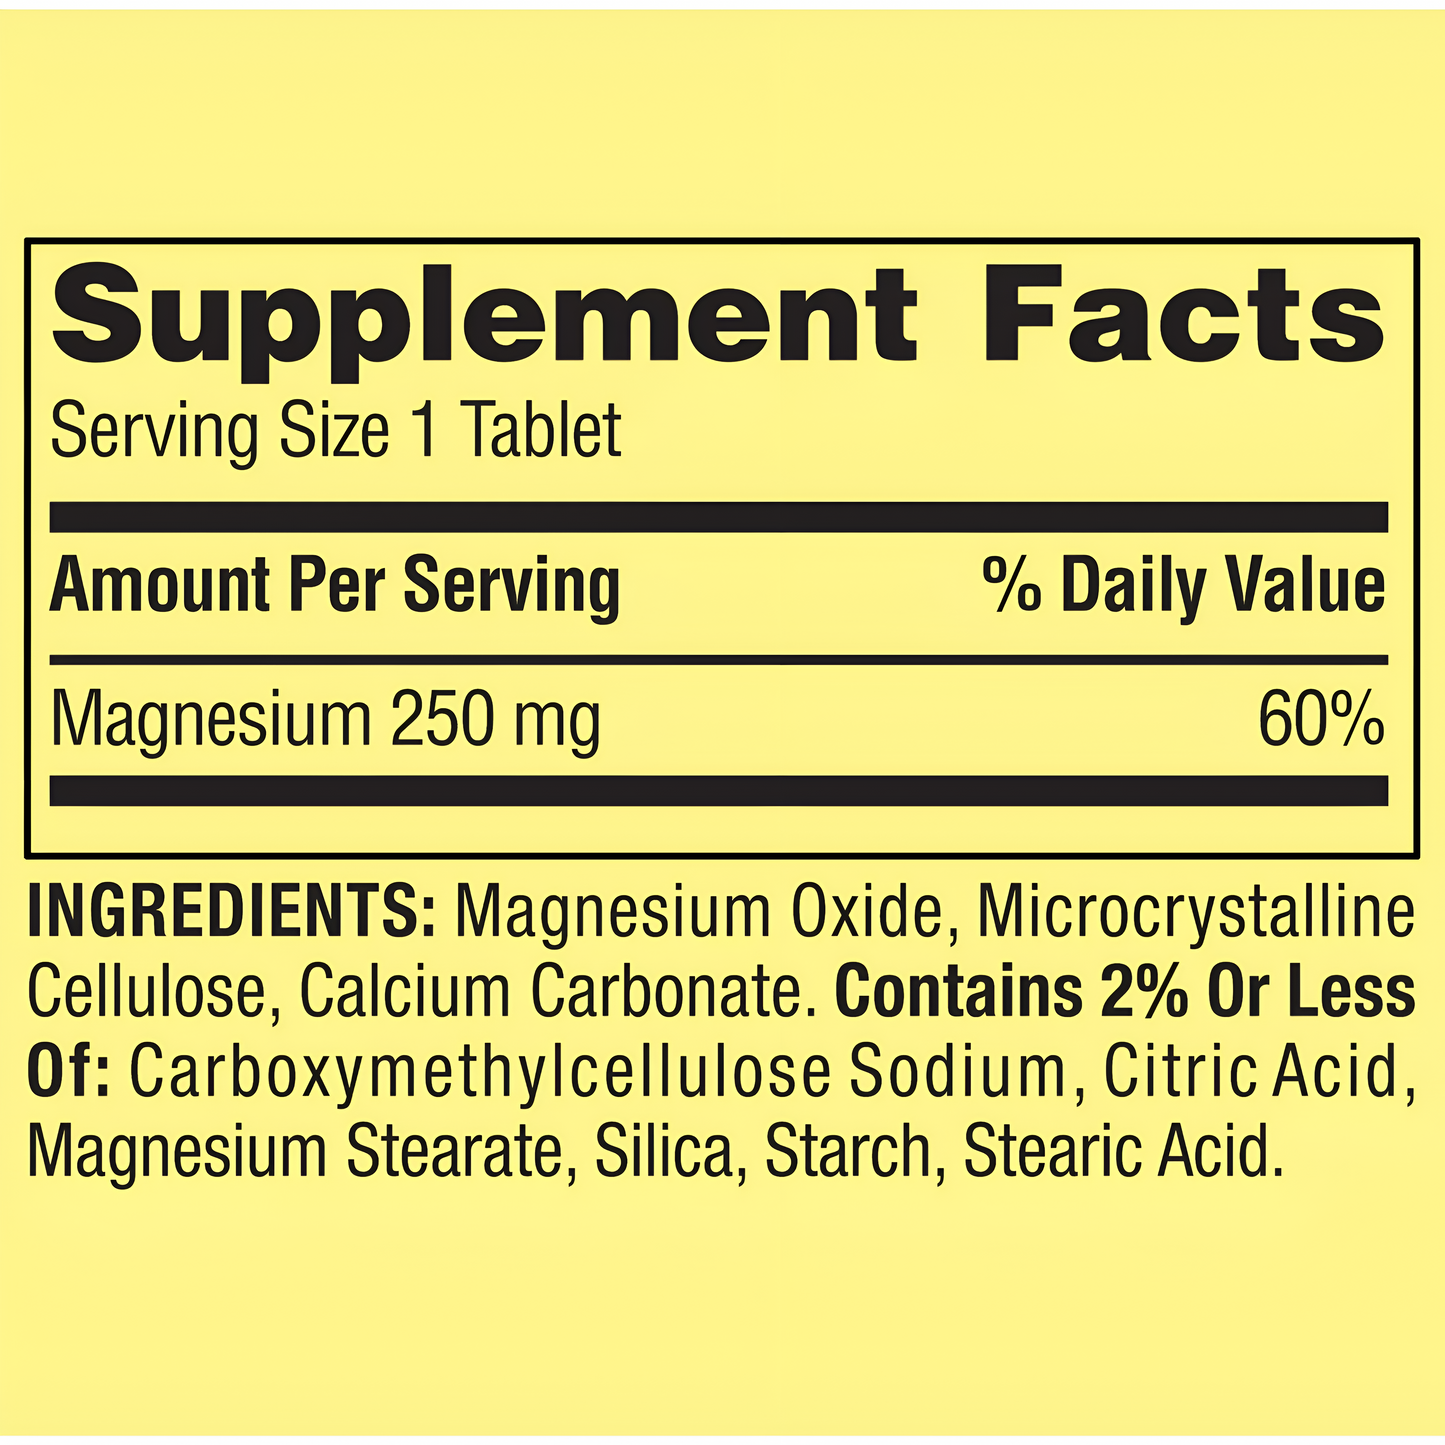 Magnesio De 250 Mg - Spring Valley -  Tabletas